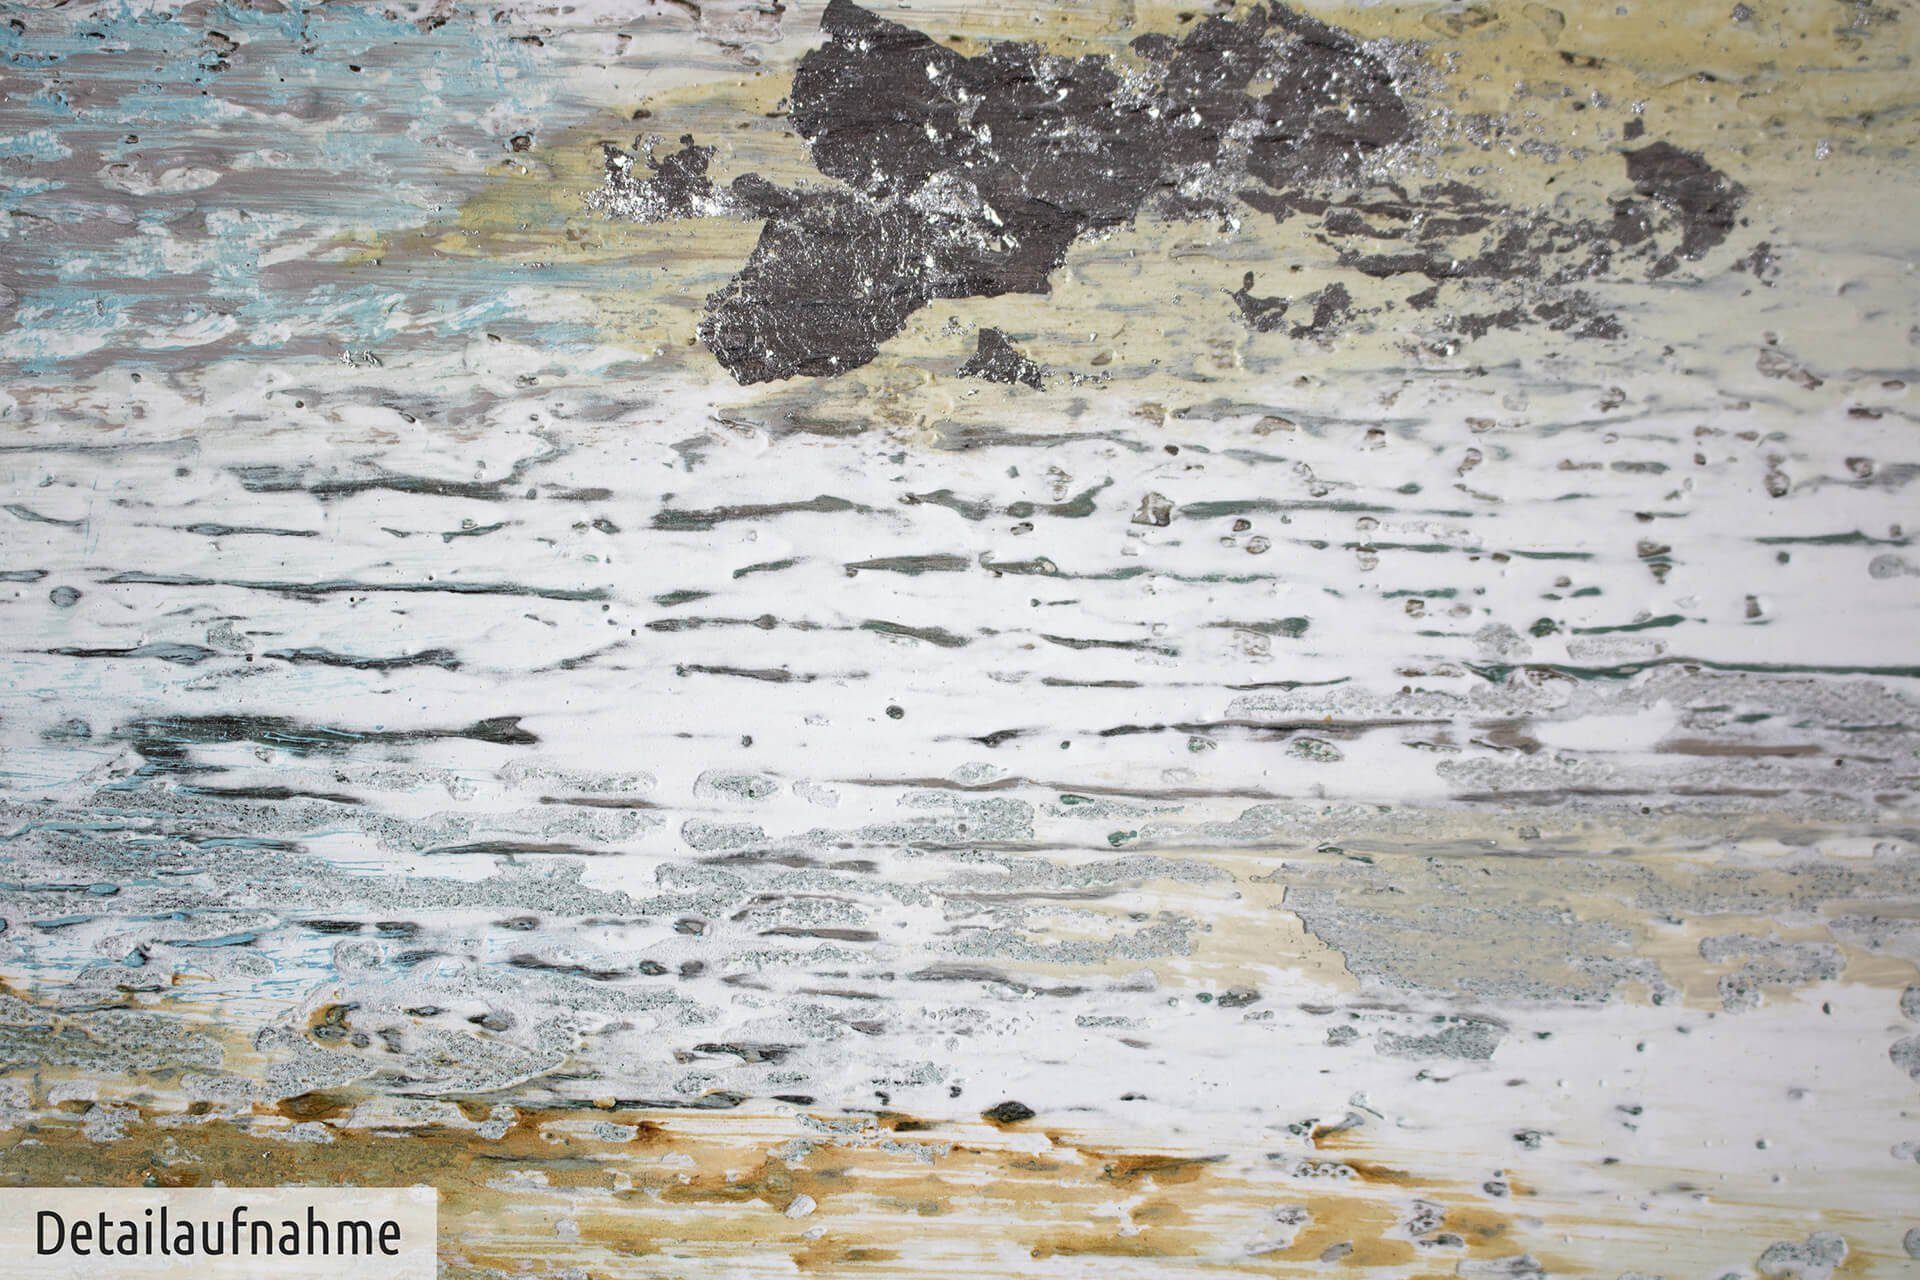 Wolkenmeer 120x80 Gemälde das HANDGEMALT KUNSTLOFT Wohnzimmer Wandbild Leinwandbild cm, 100% Durch